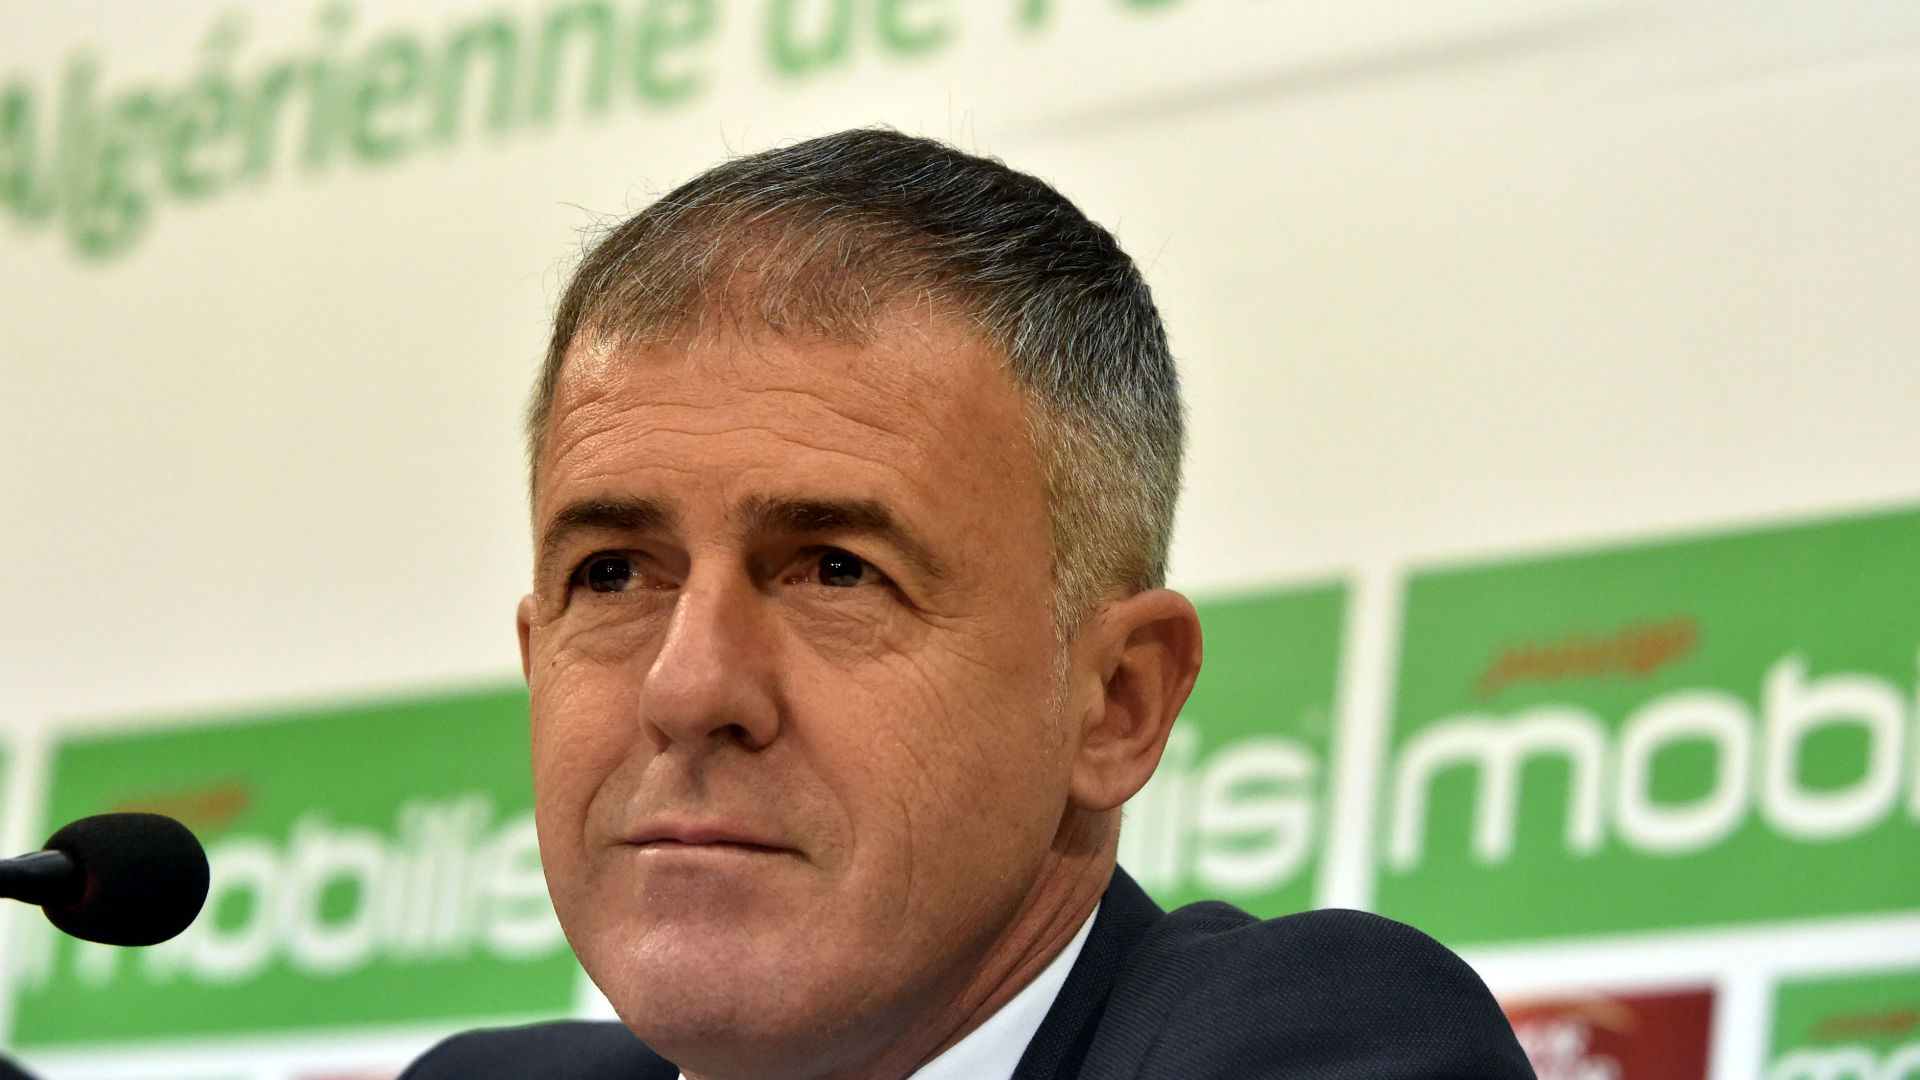 Algeria Football Federation to pay Alcaraz €1.5m compensation